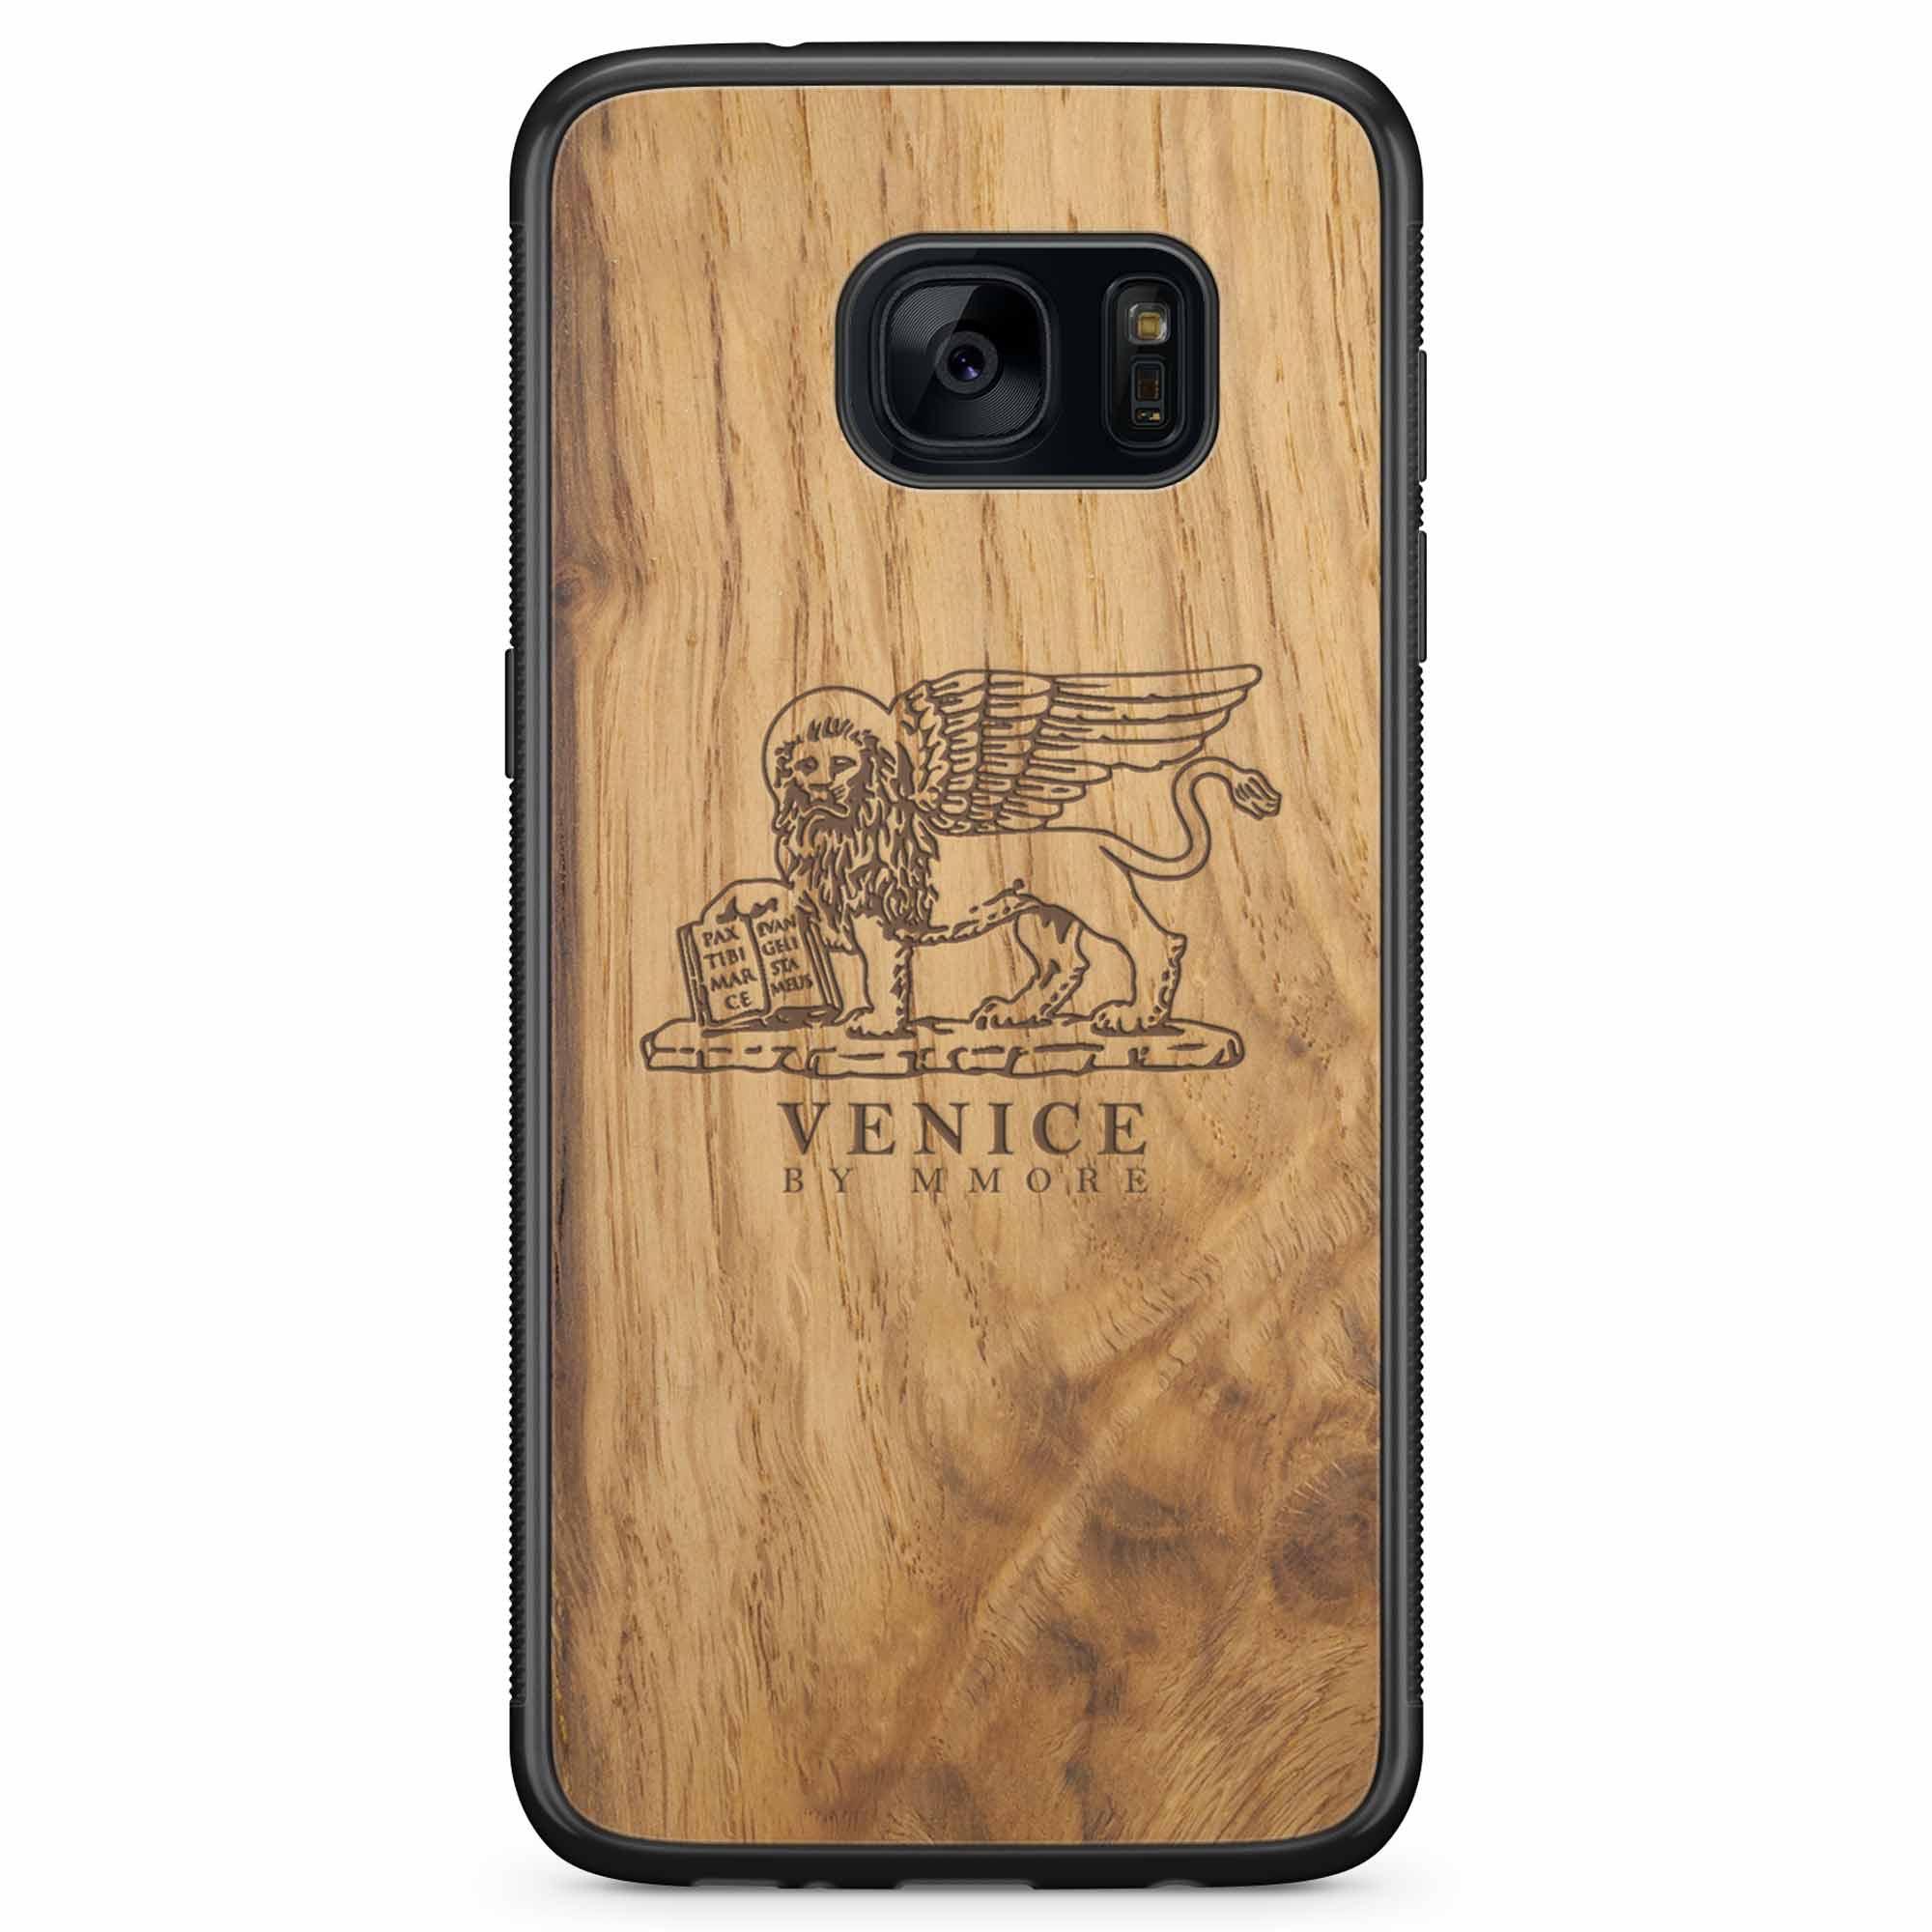 Venice Lion Samsung S7 Carcasa de madera antigua para teléfono